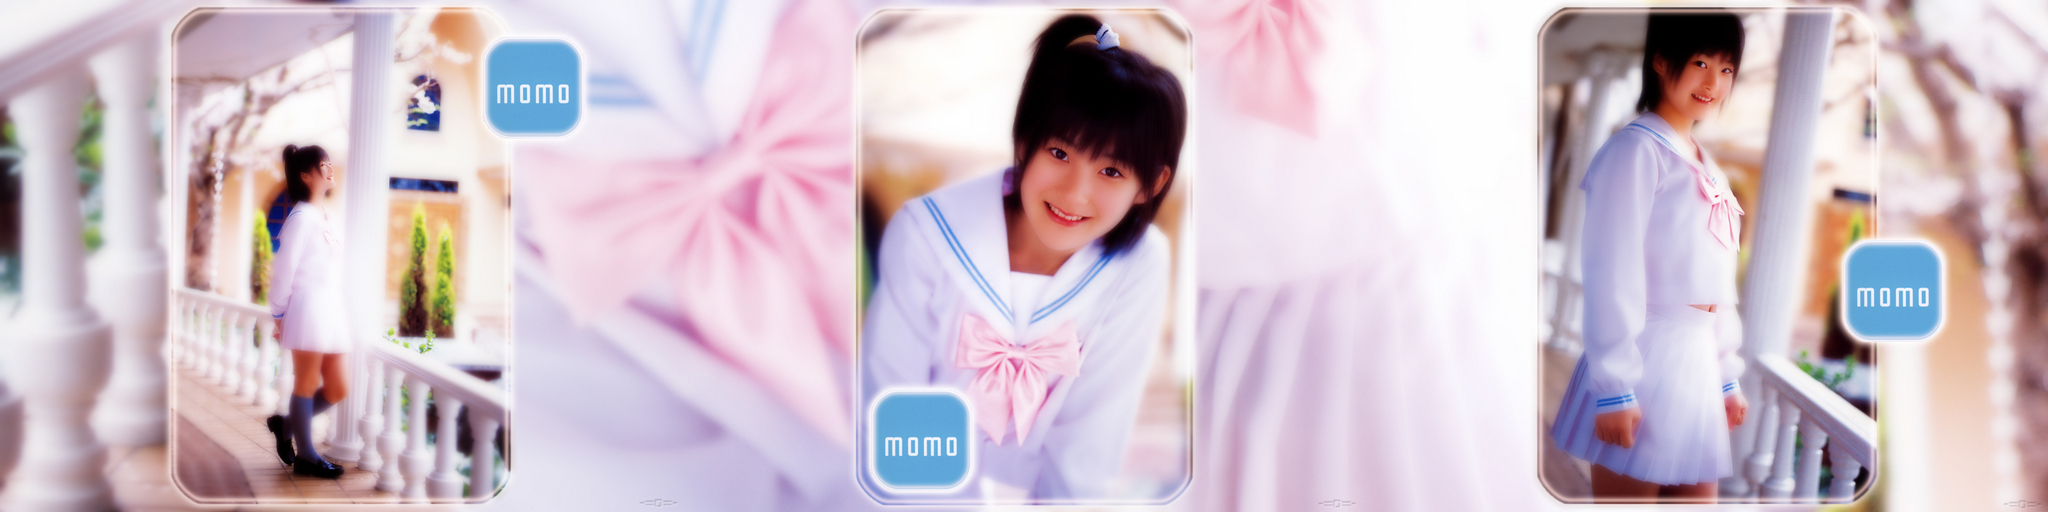 Momo-WhiteBlue.jpg